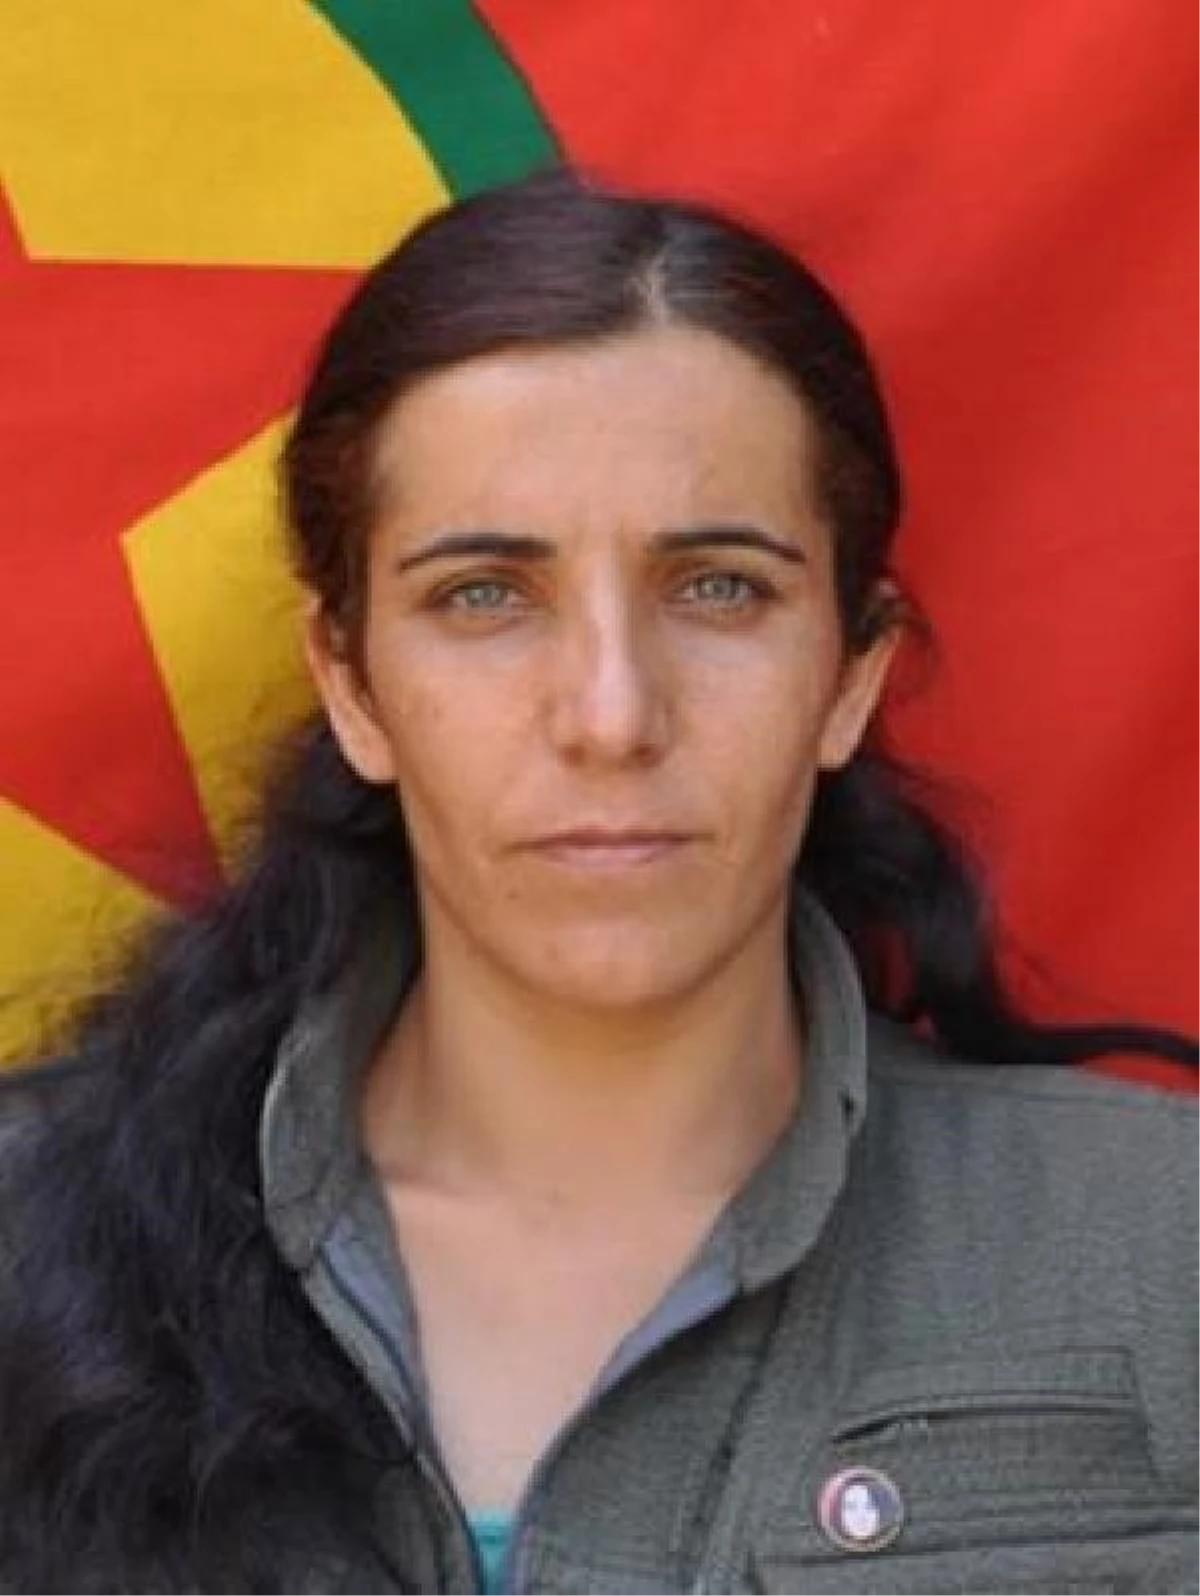 PKK/KCK\'nın sözde Hakurk toplumsal alan sorumlusu etkisiz hale getirildi